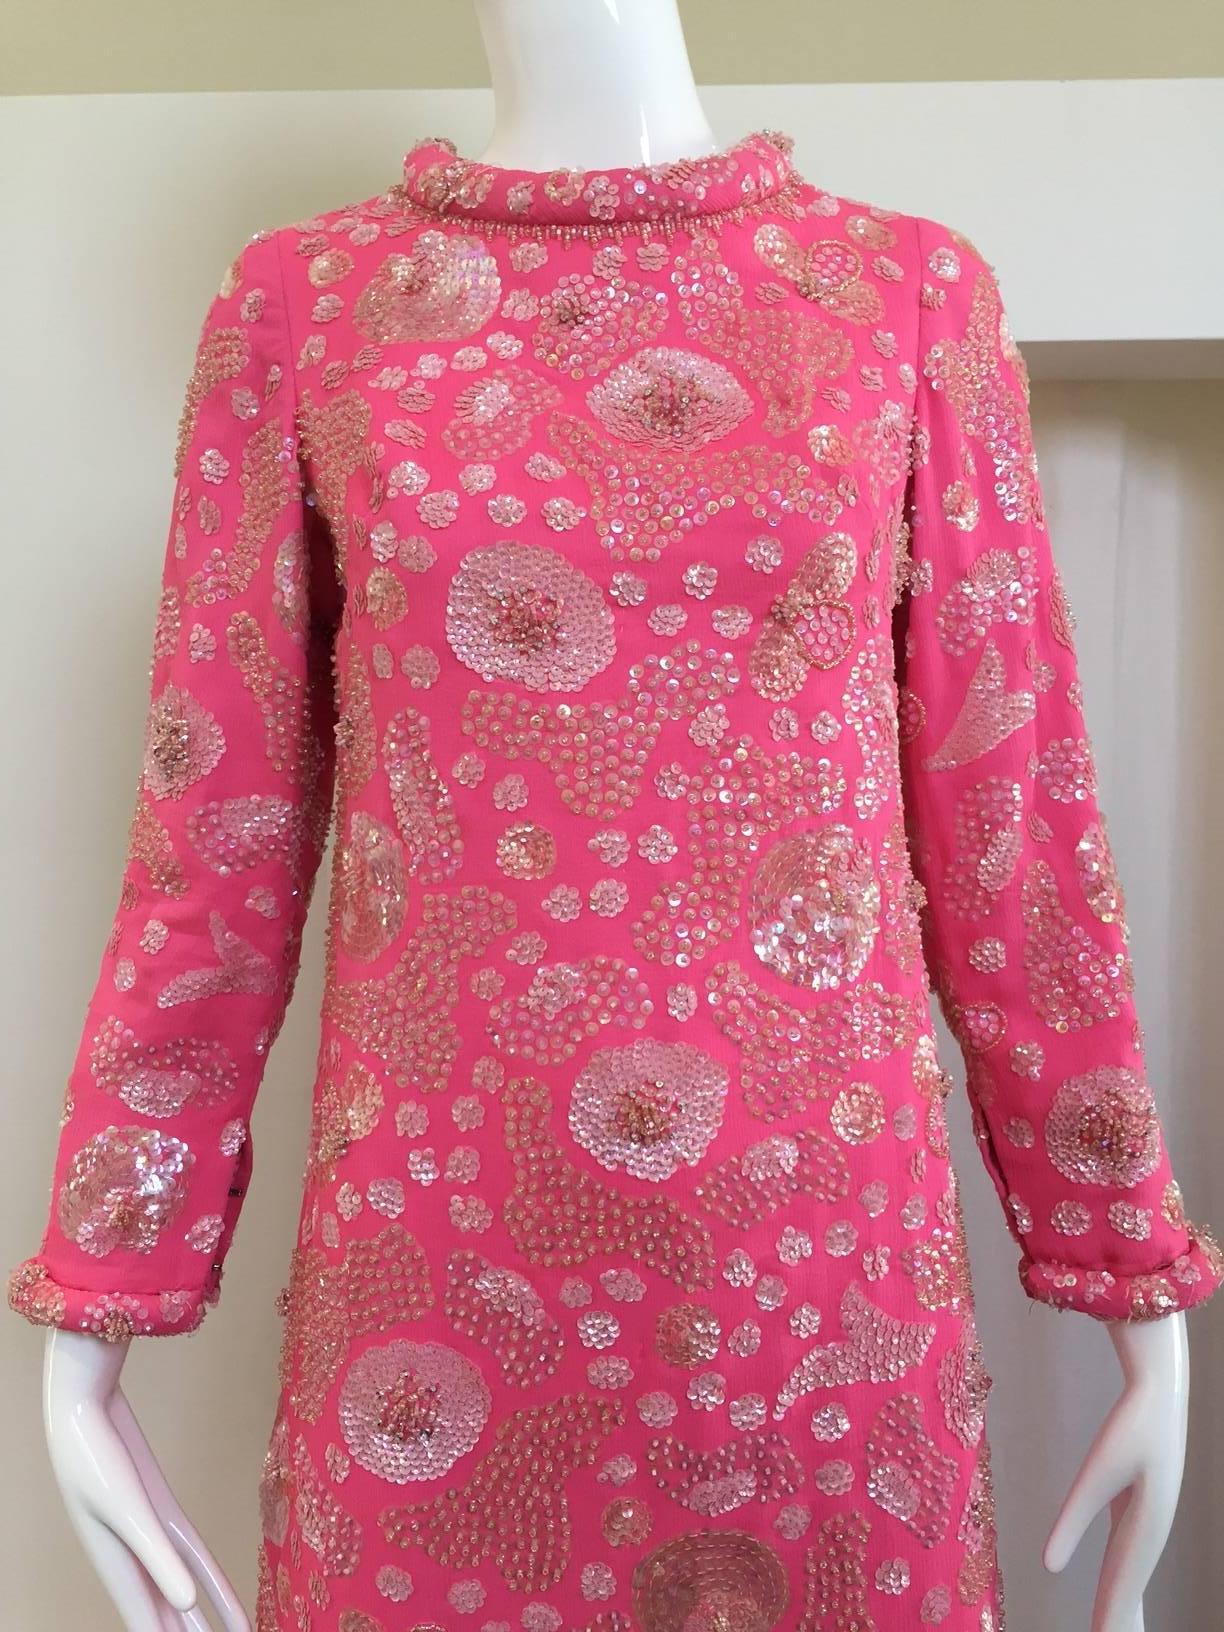 Vintage 1960s Buble gum Pink Jackie O Seide Perlen Shift Kleid verschönert weiß schillernden klaren Pailletten.
Schultern: 13